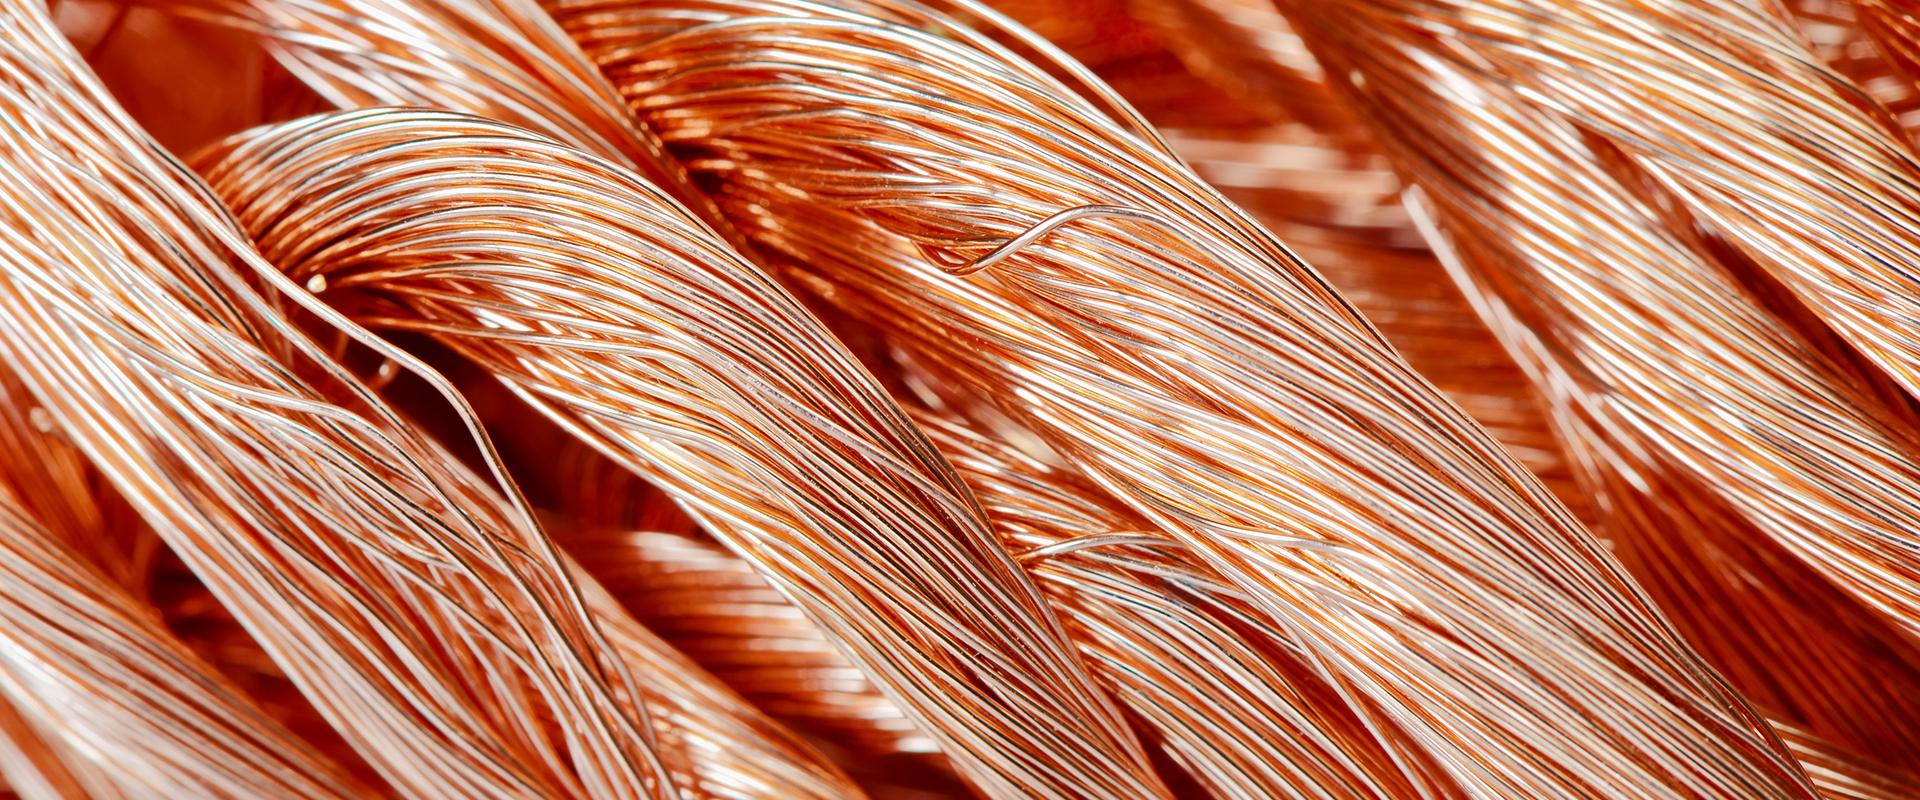 Braids of copper wire, Russia